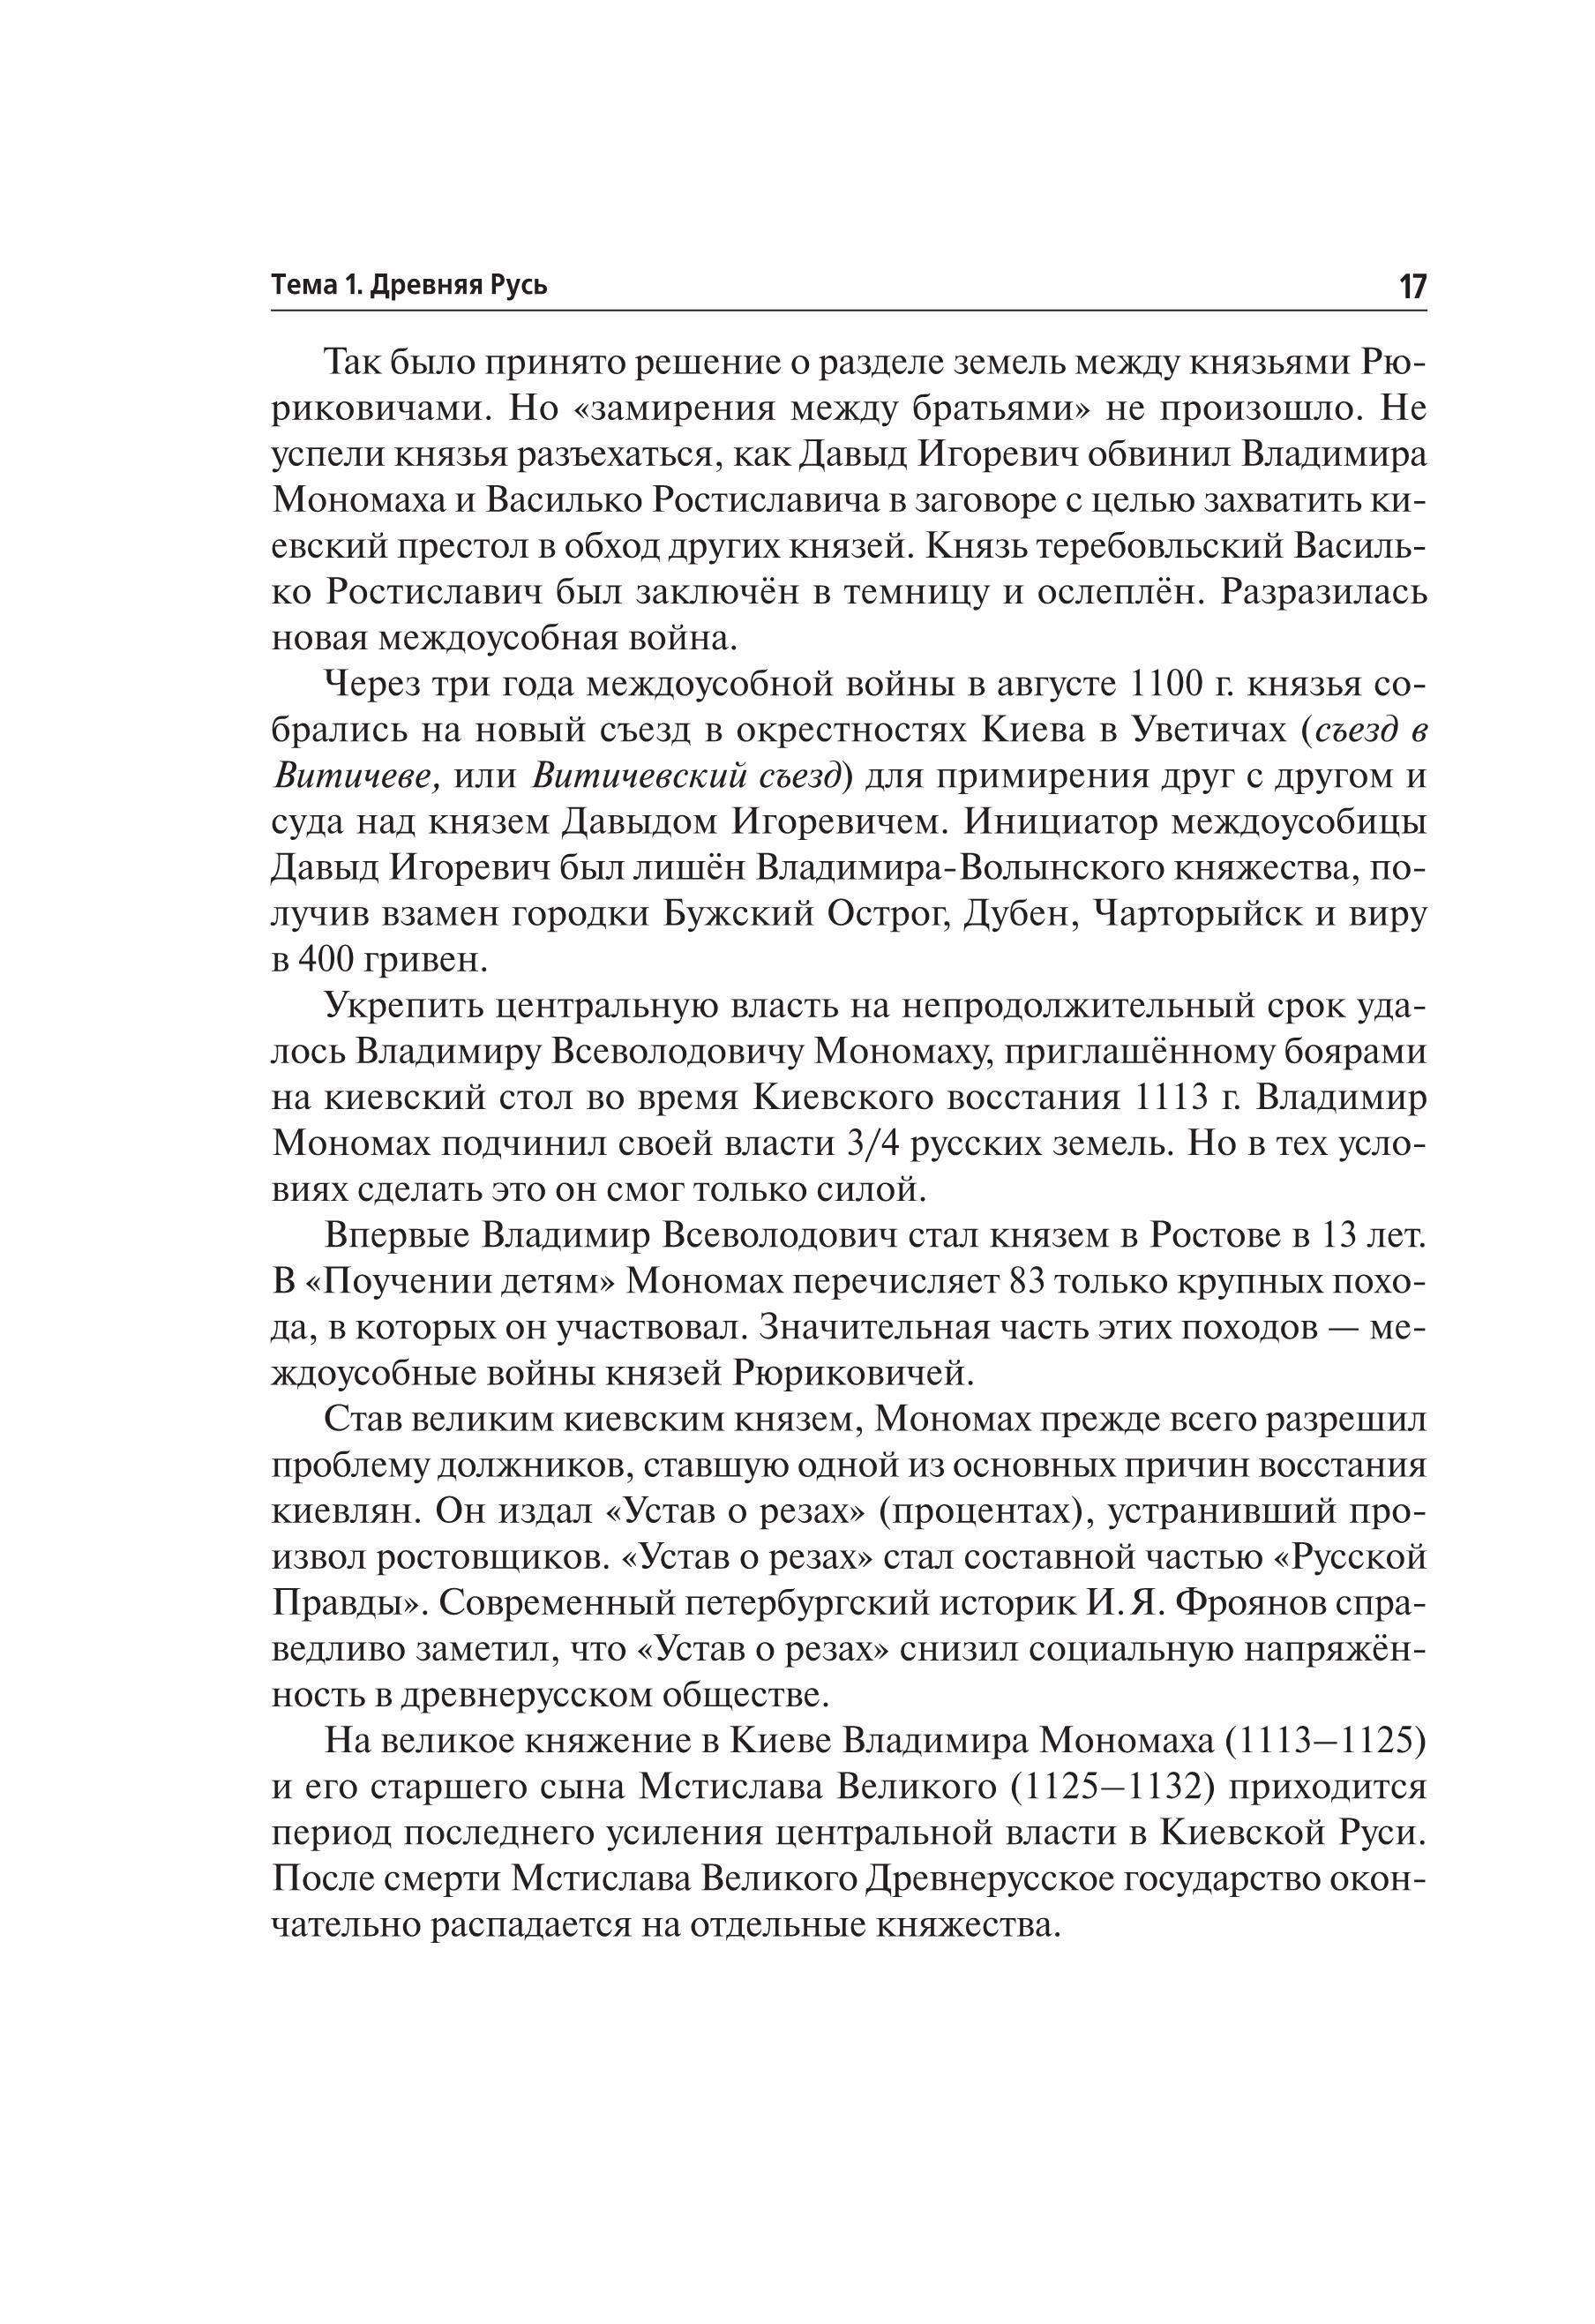 История. Большой справочник для подготовки к ЕГЭ и ОГЭ. 5-е изд.